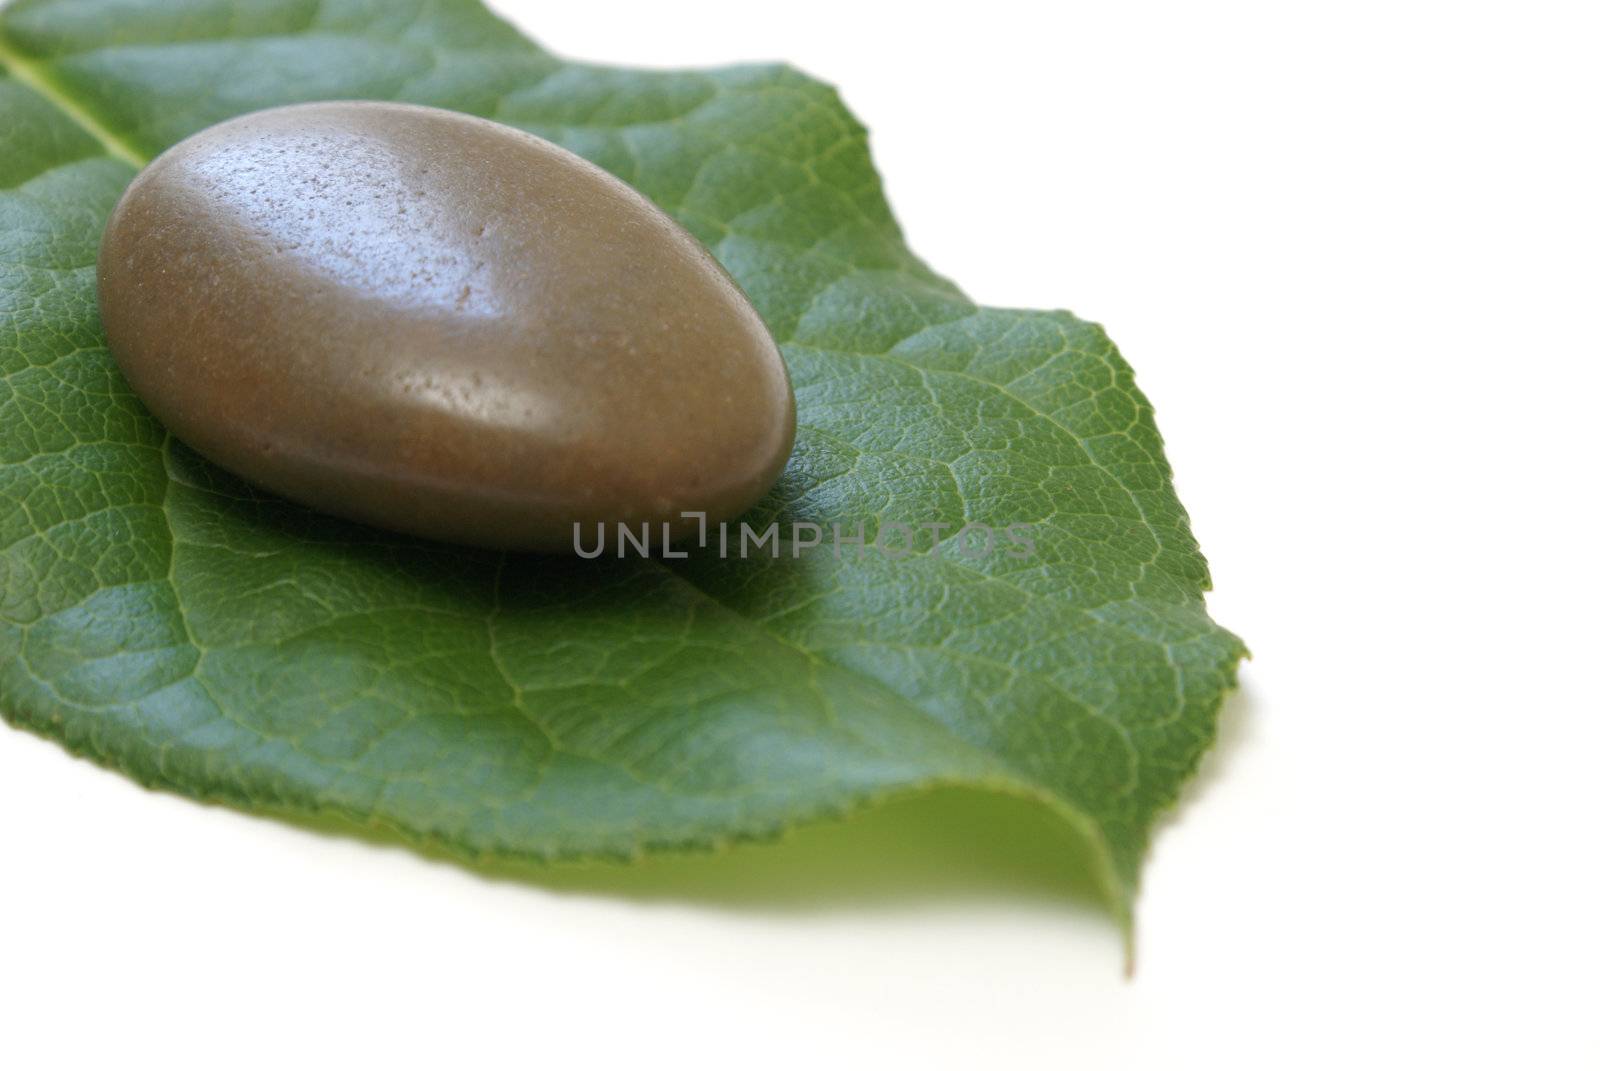 A smooth stone on a fresh green leaf.